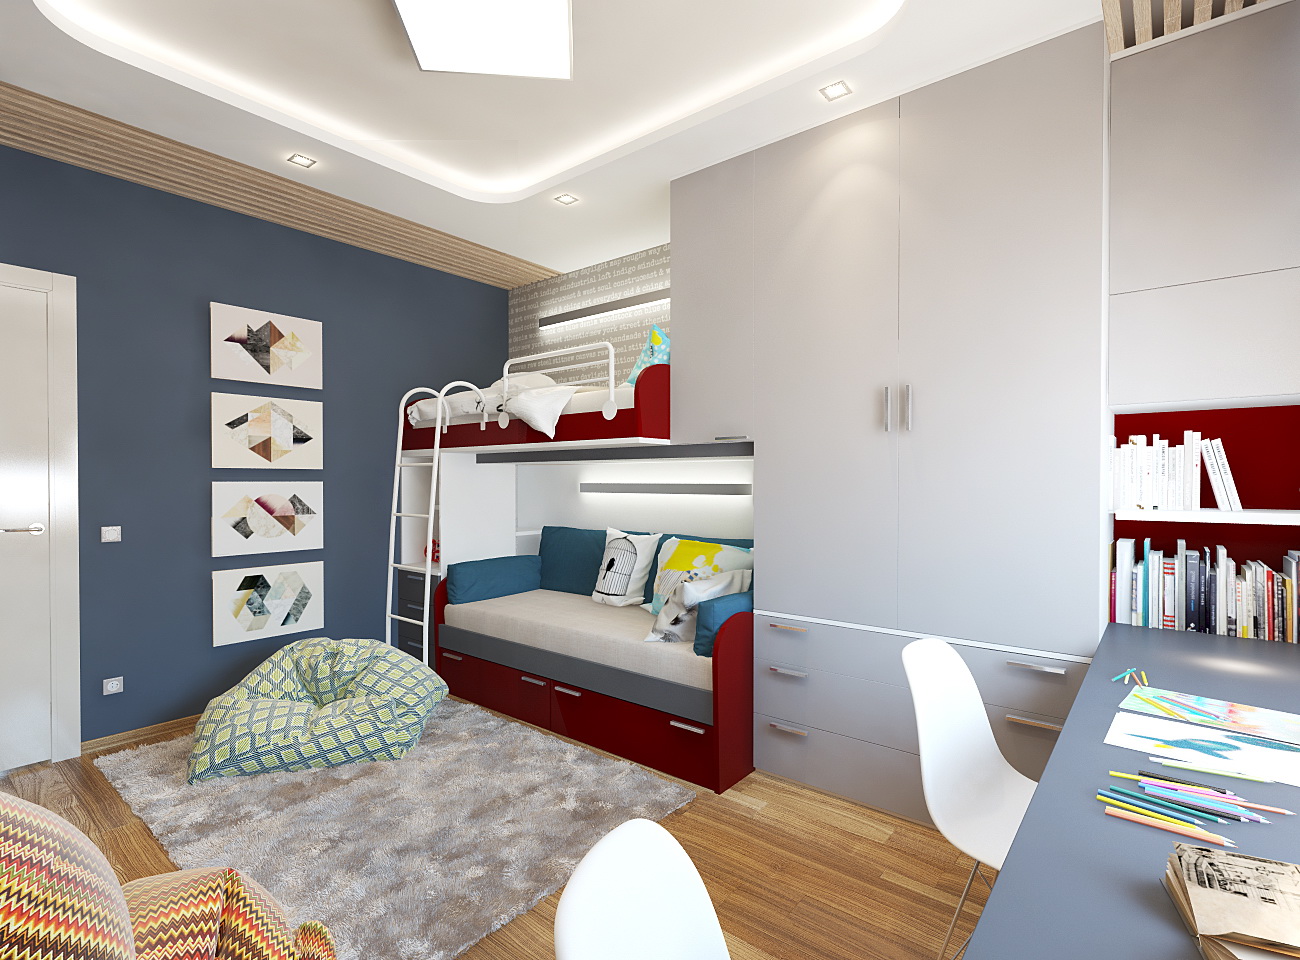 Дизайн-проект детской комнаты 15 кв. м для двух мальчиков разного возраста